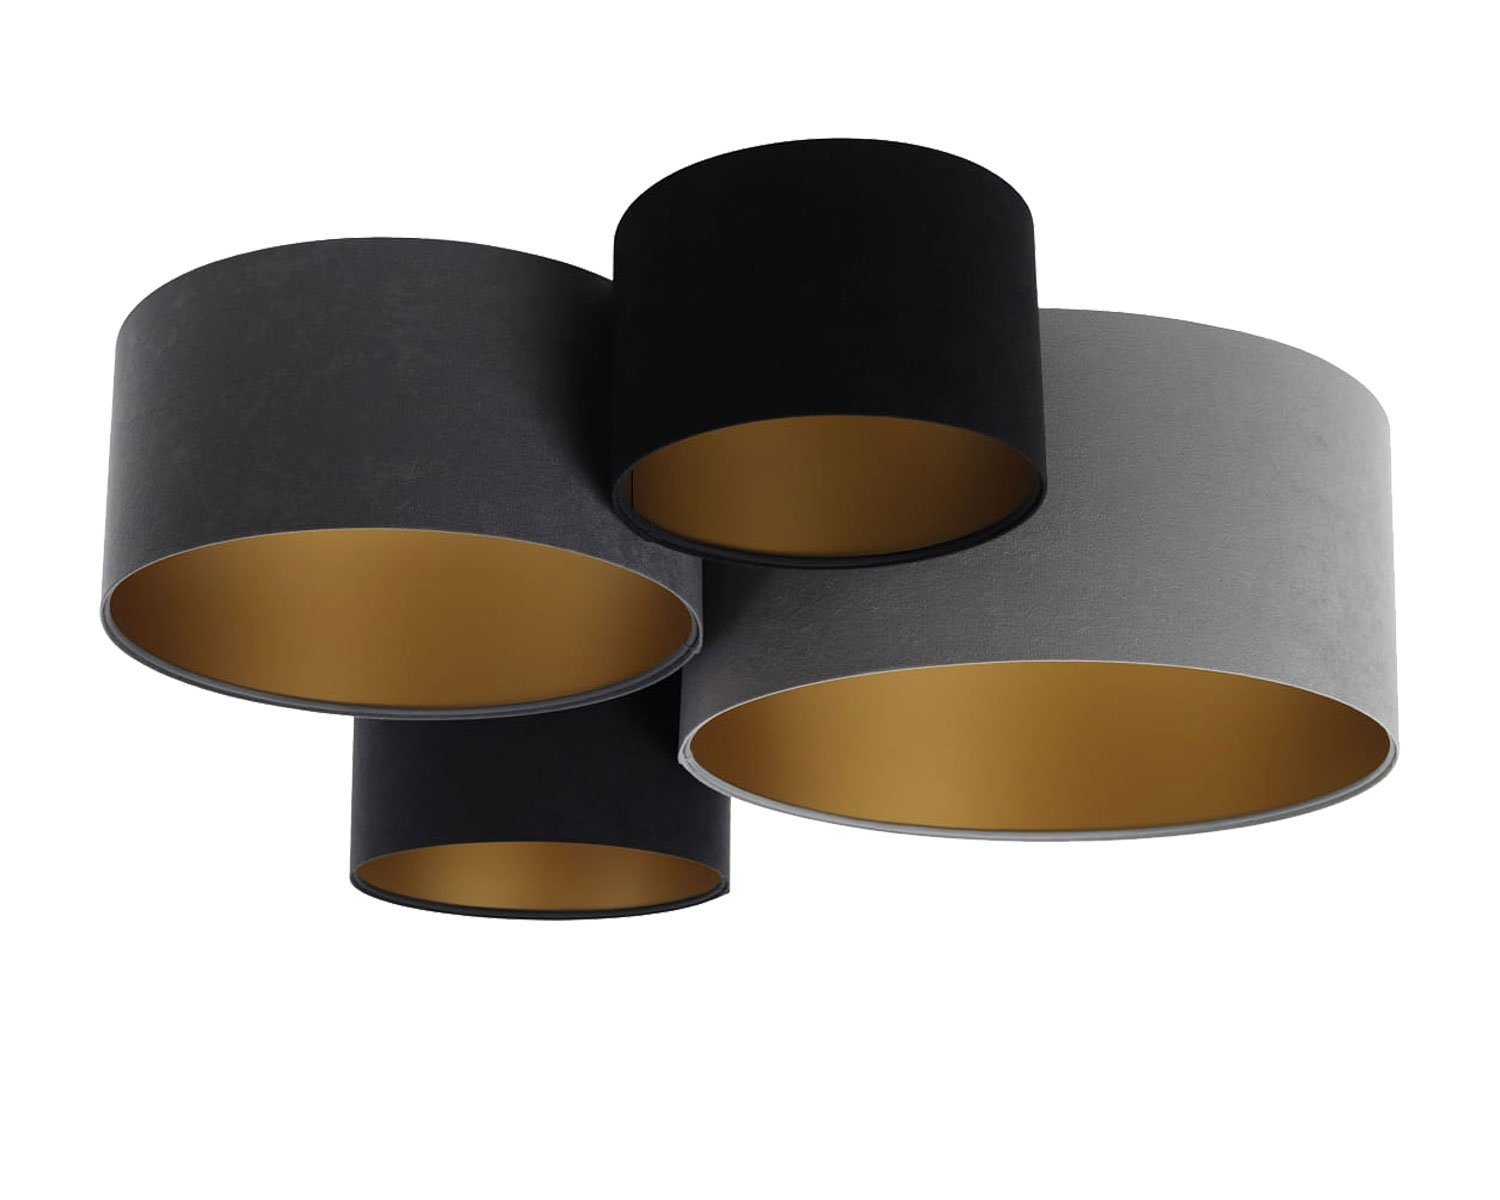 Kiom Deckenleuchte PlaMian 4 black, dark grey, grey & gold 92 x 88 cm, Fassung 4 x E27, Leuchtmittel nicht inklusive, Leuchtmittel abhängig